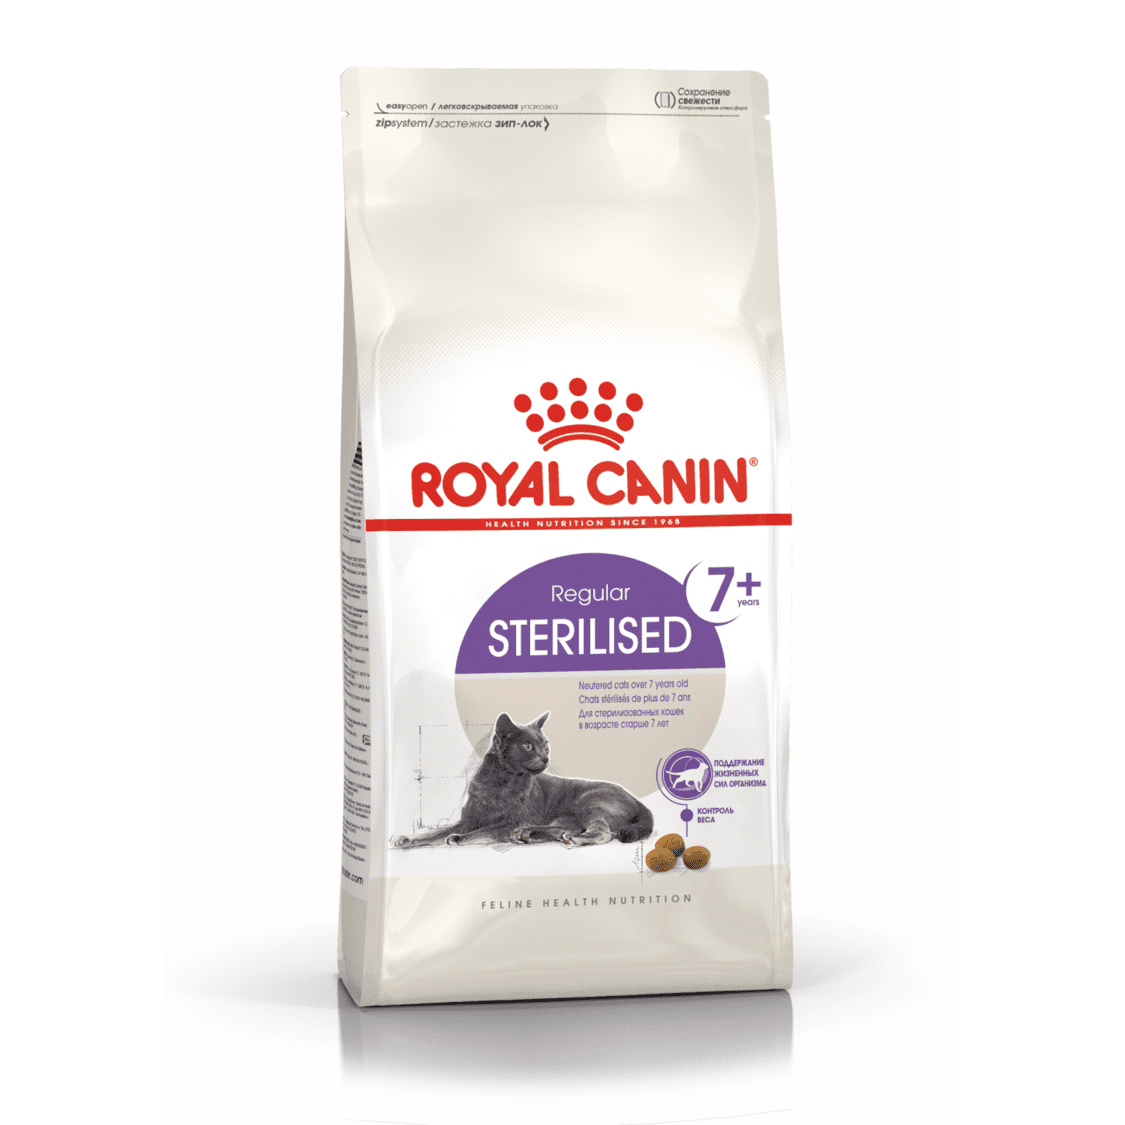 Royal Canin Royal Canin для пожилых кастрированных кошек (7-12 лет) (3,5 кг) цена и фото